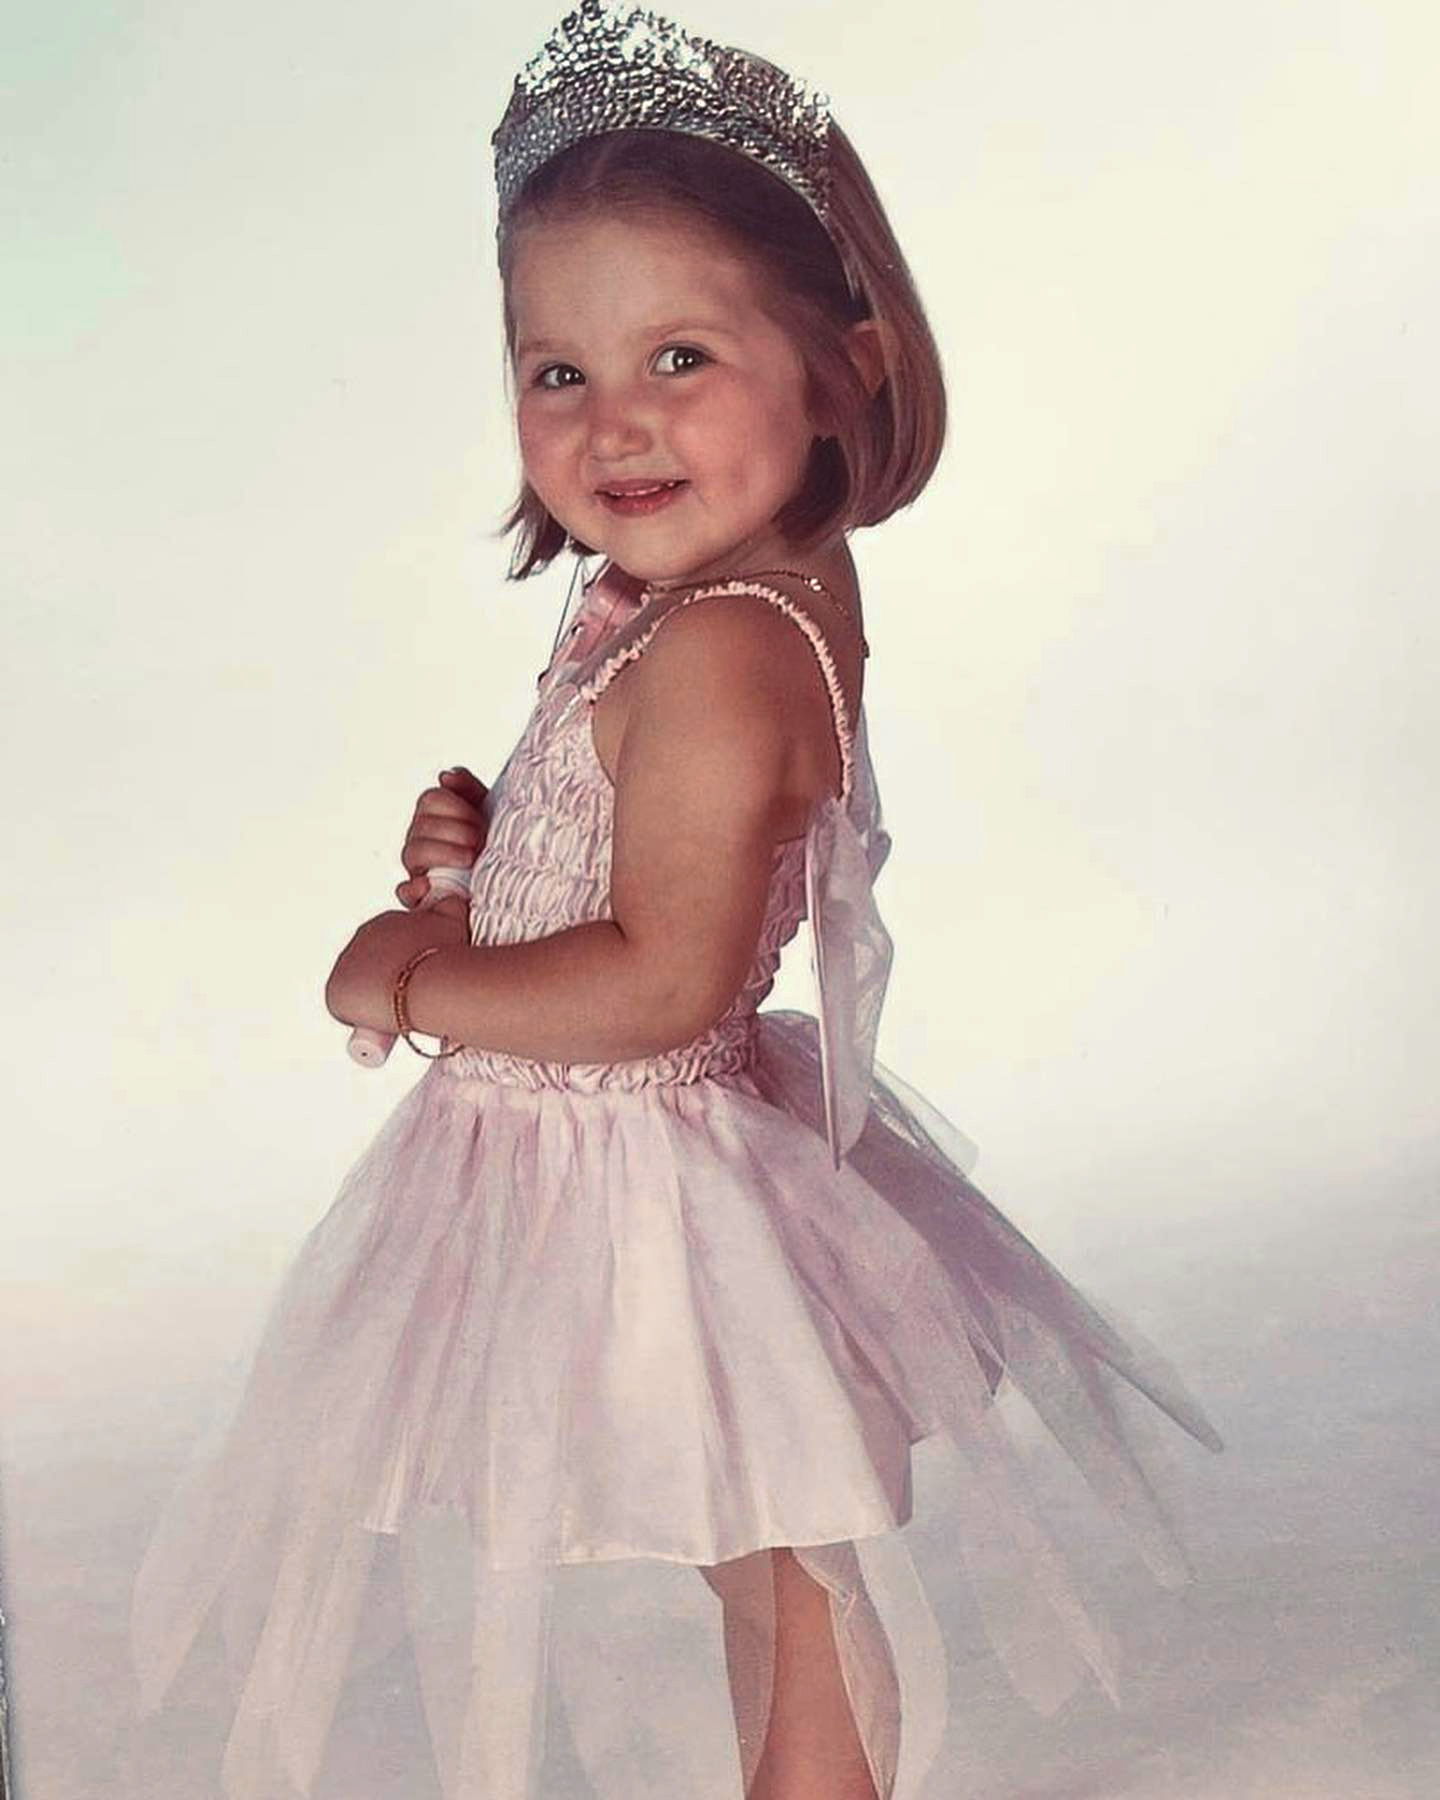 Mia begann mit dem Tanzen, als sie erst zwei Jahre alt war